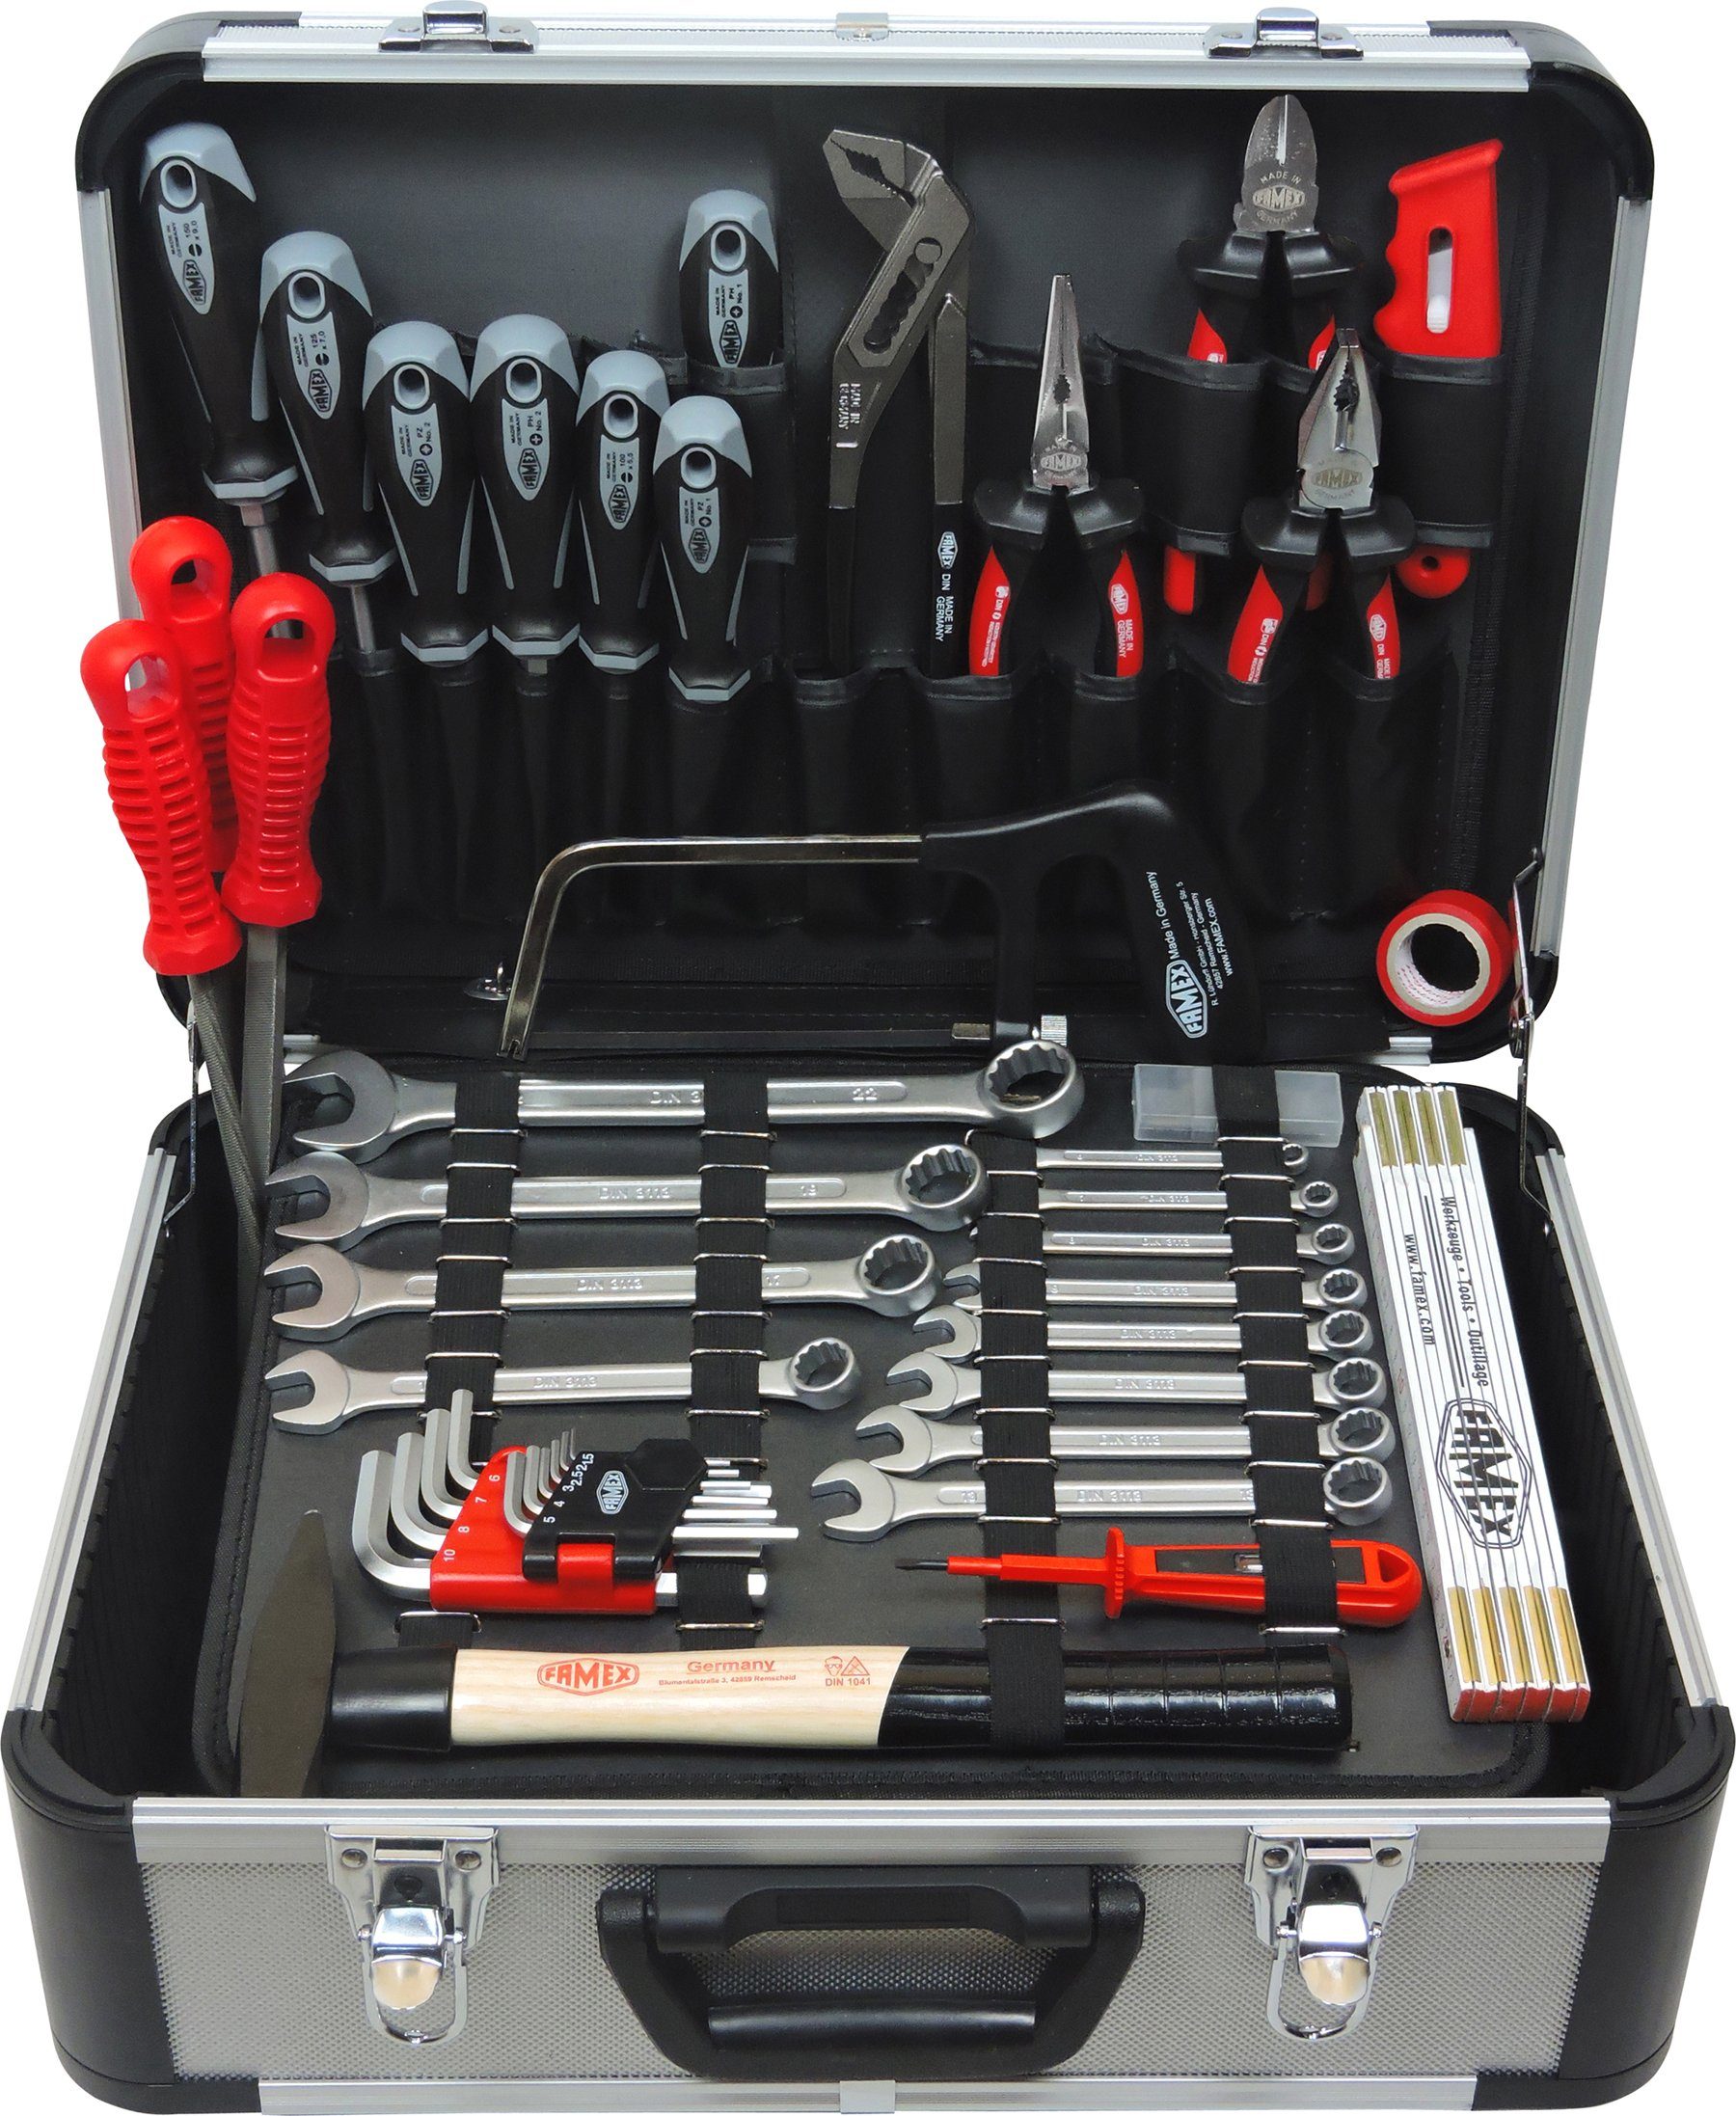 Profi Alu Werkzeugkoffer mit Werkzeug-Set 109 tlg Werkzeugkasten Werkzeugsset 